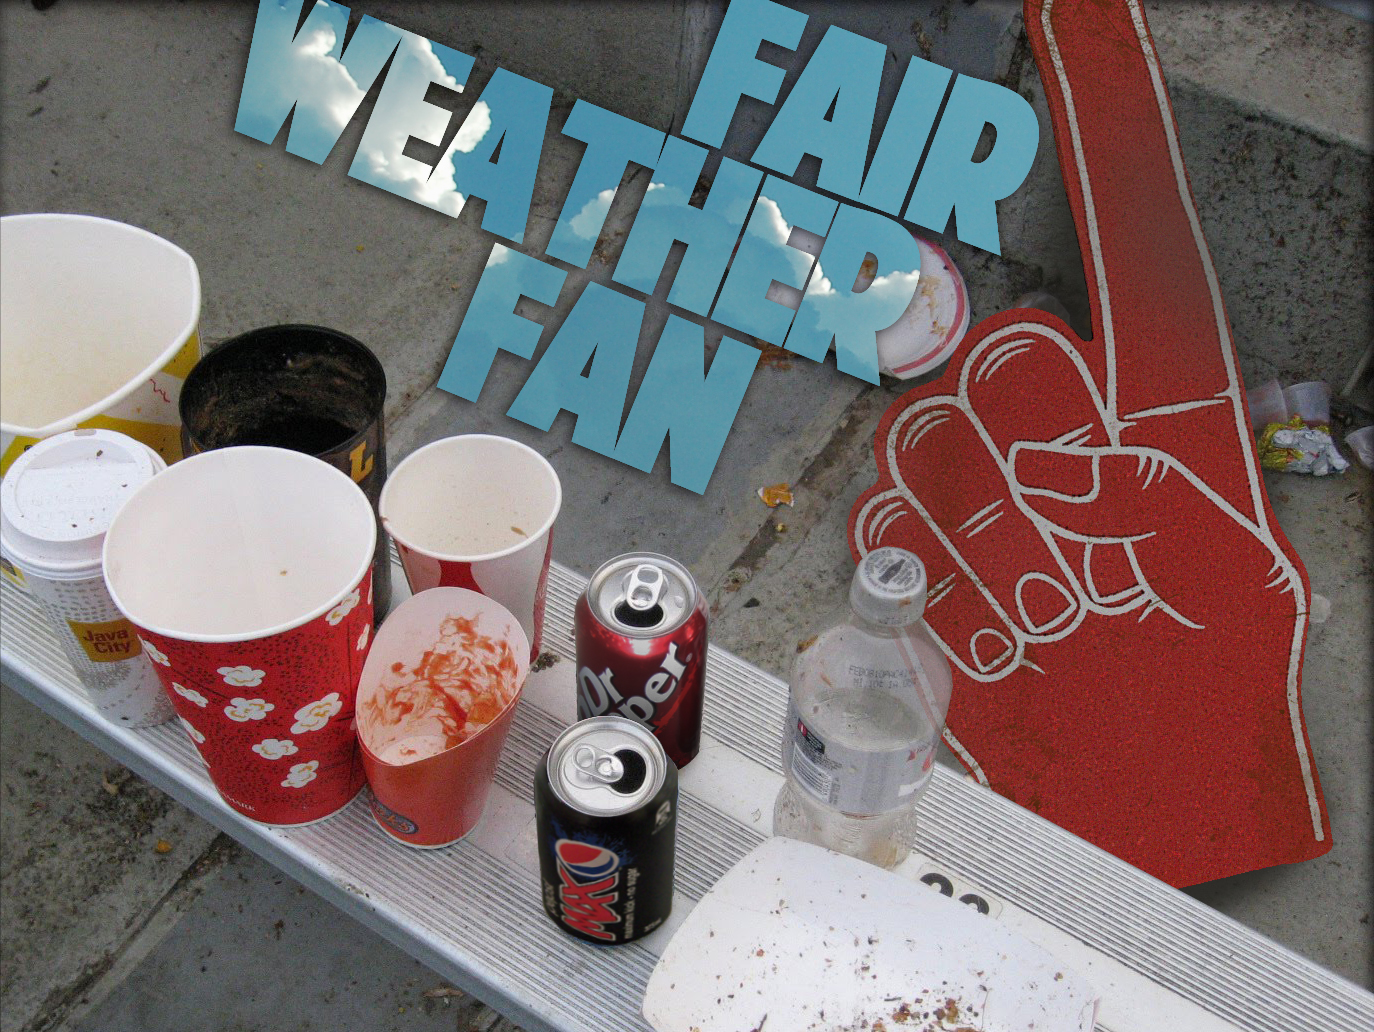 Fair Weather Fan